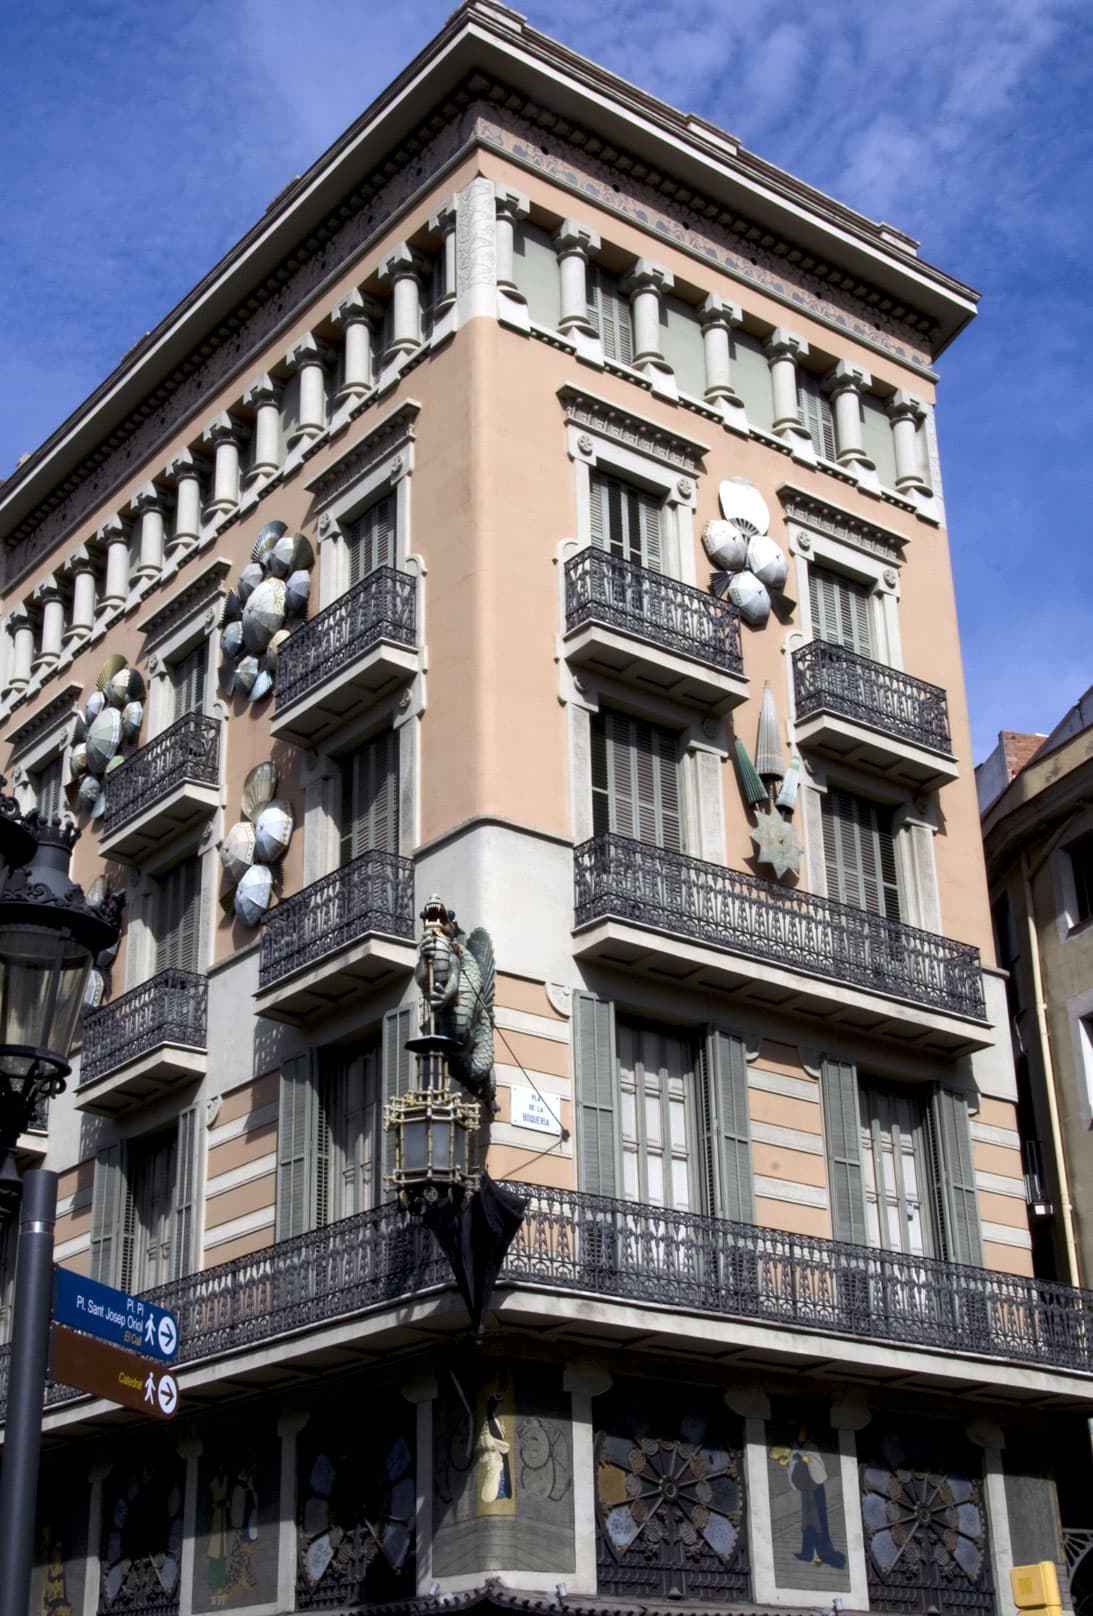 La casa de los paraguas Barcelone